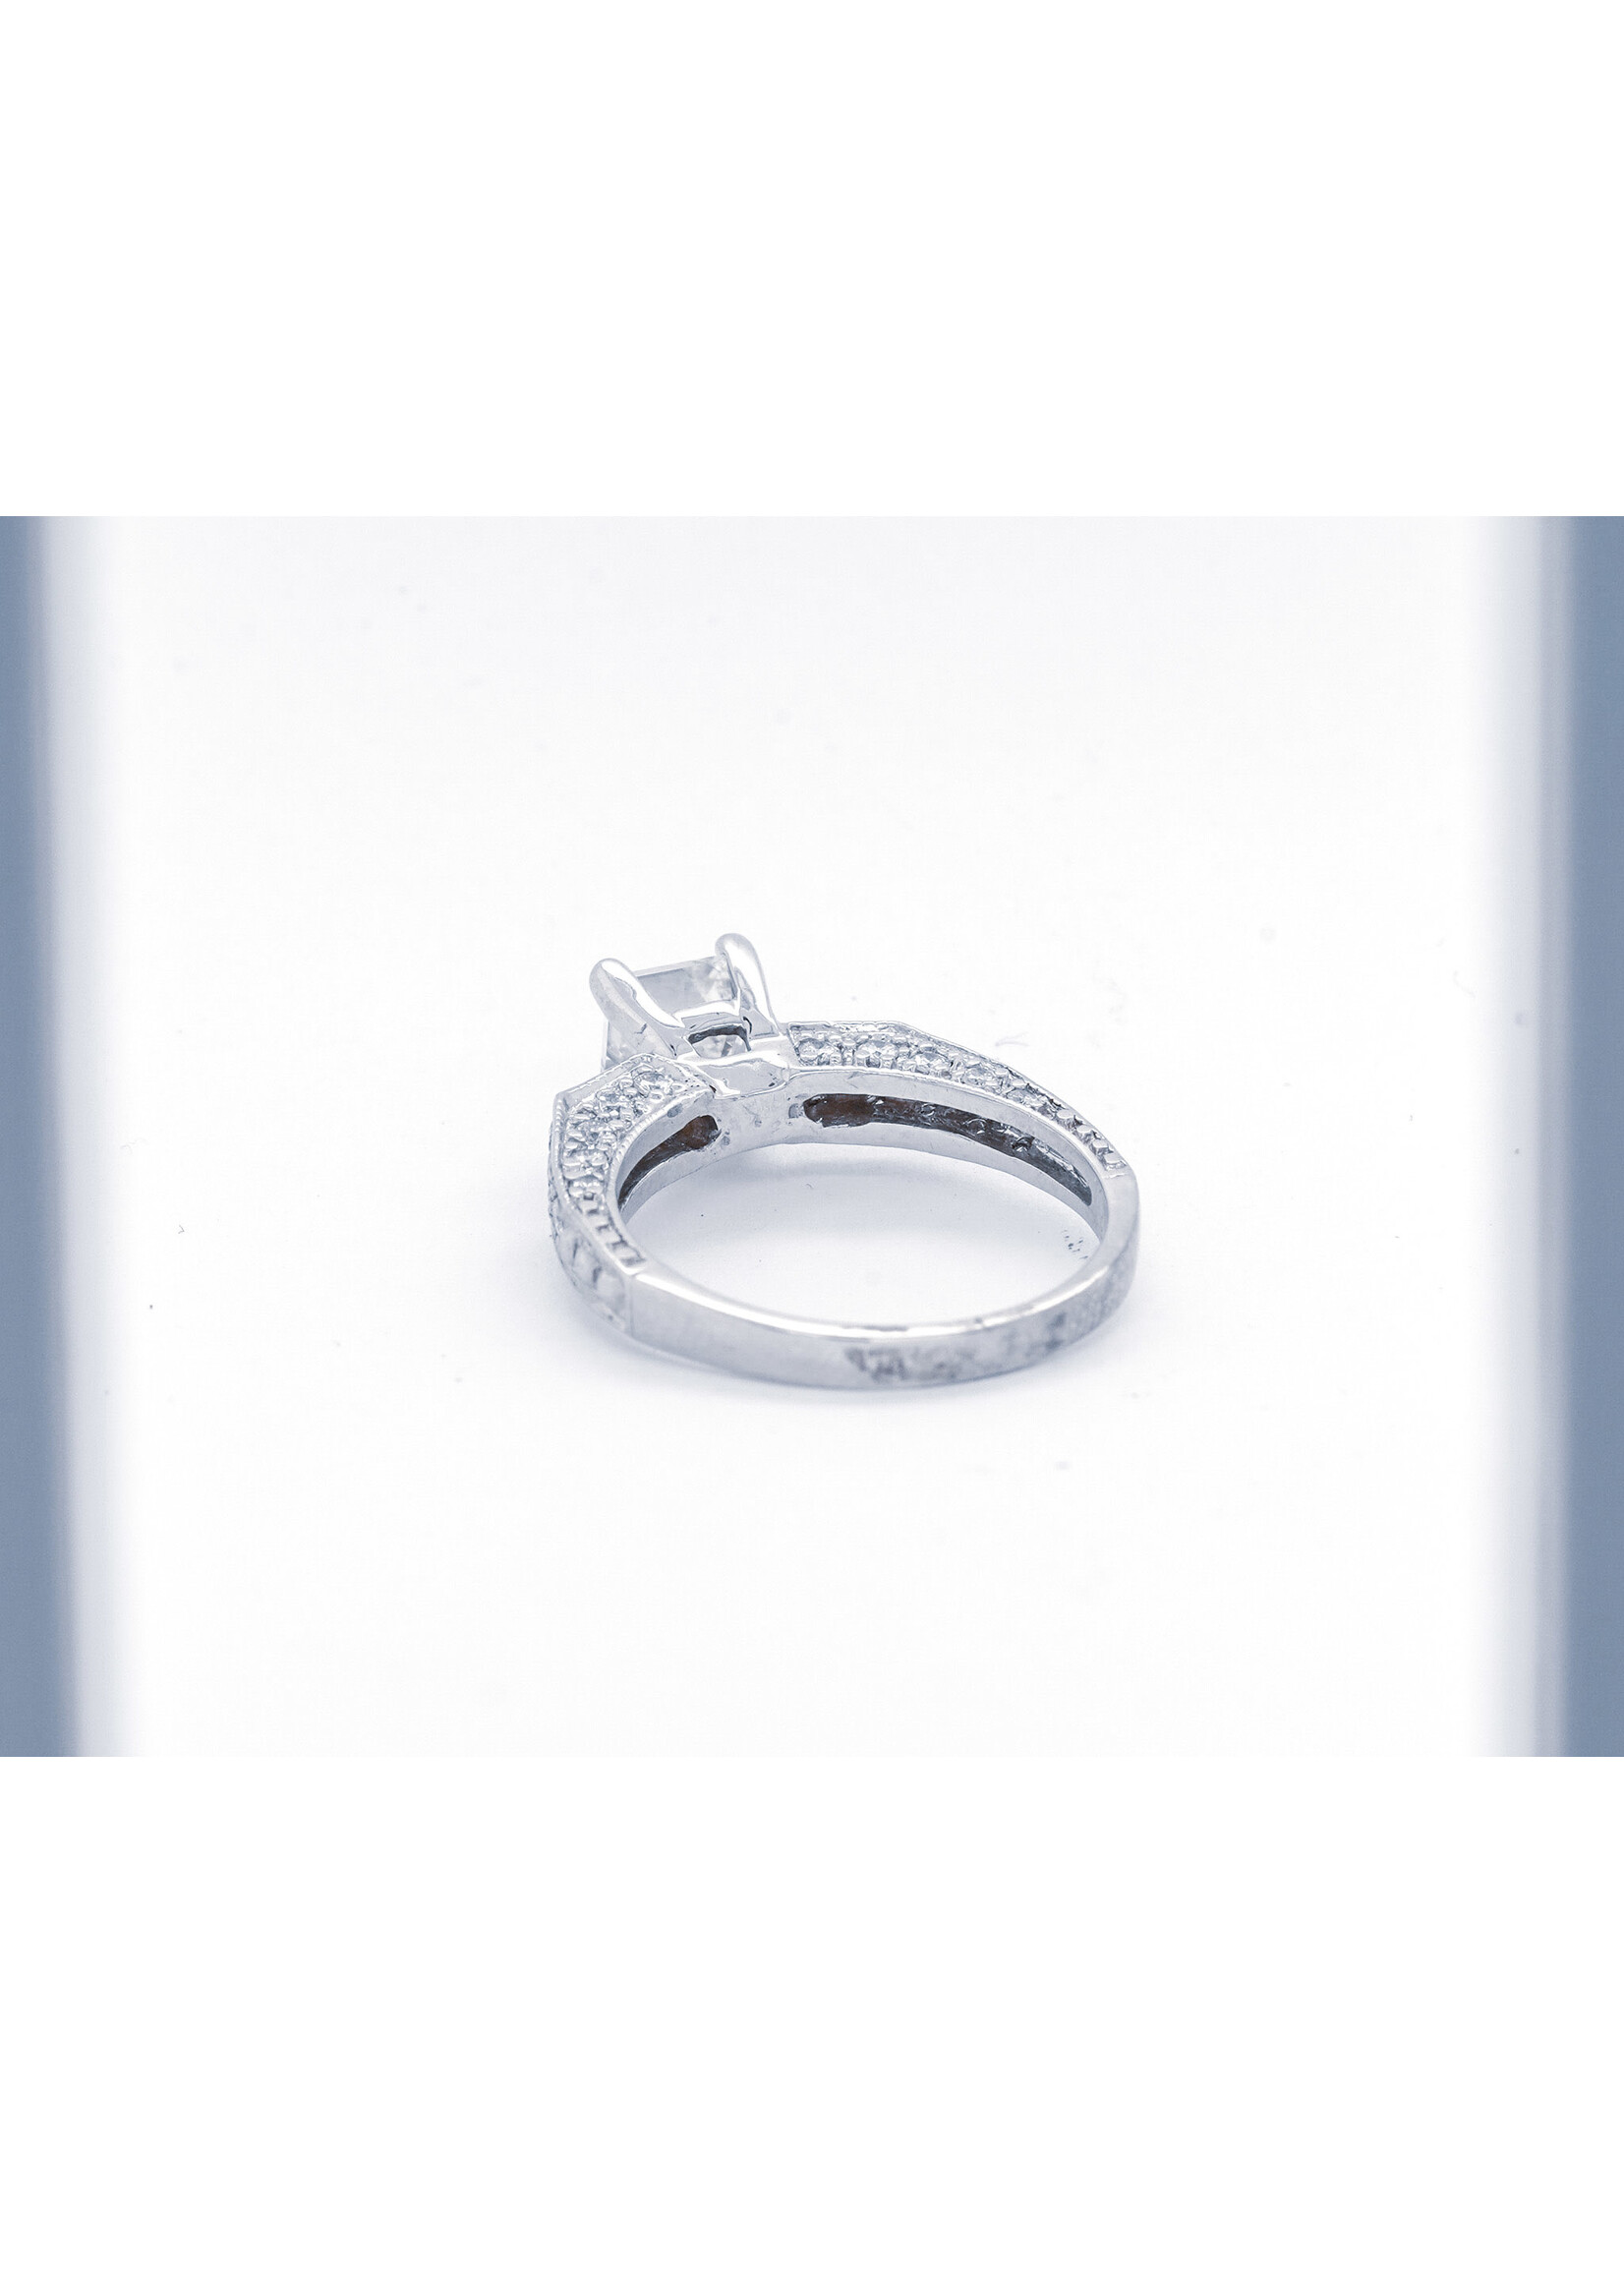 Plat 5.38g 1.76TW (1.31ctr) I/VS1 Asscher Cut Diamond Engagement Ring (size 6.25)